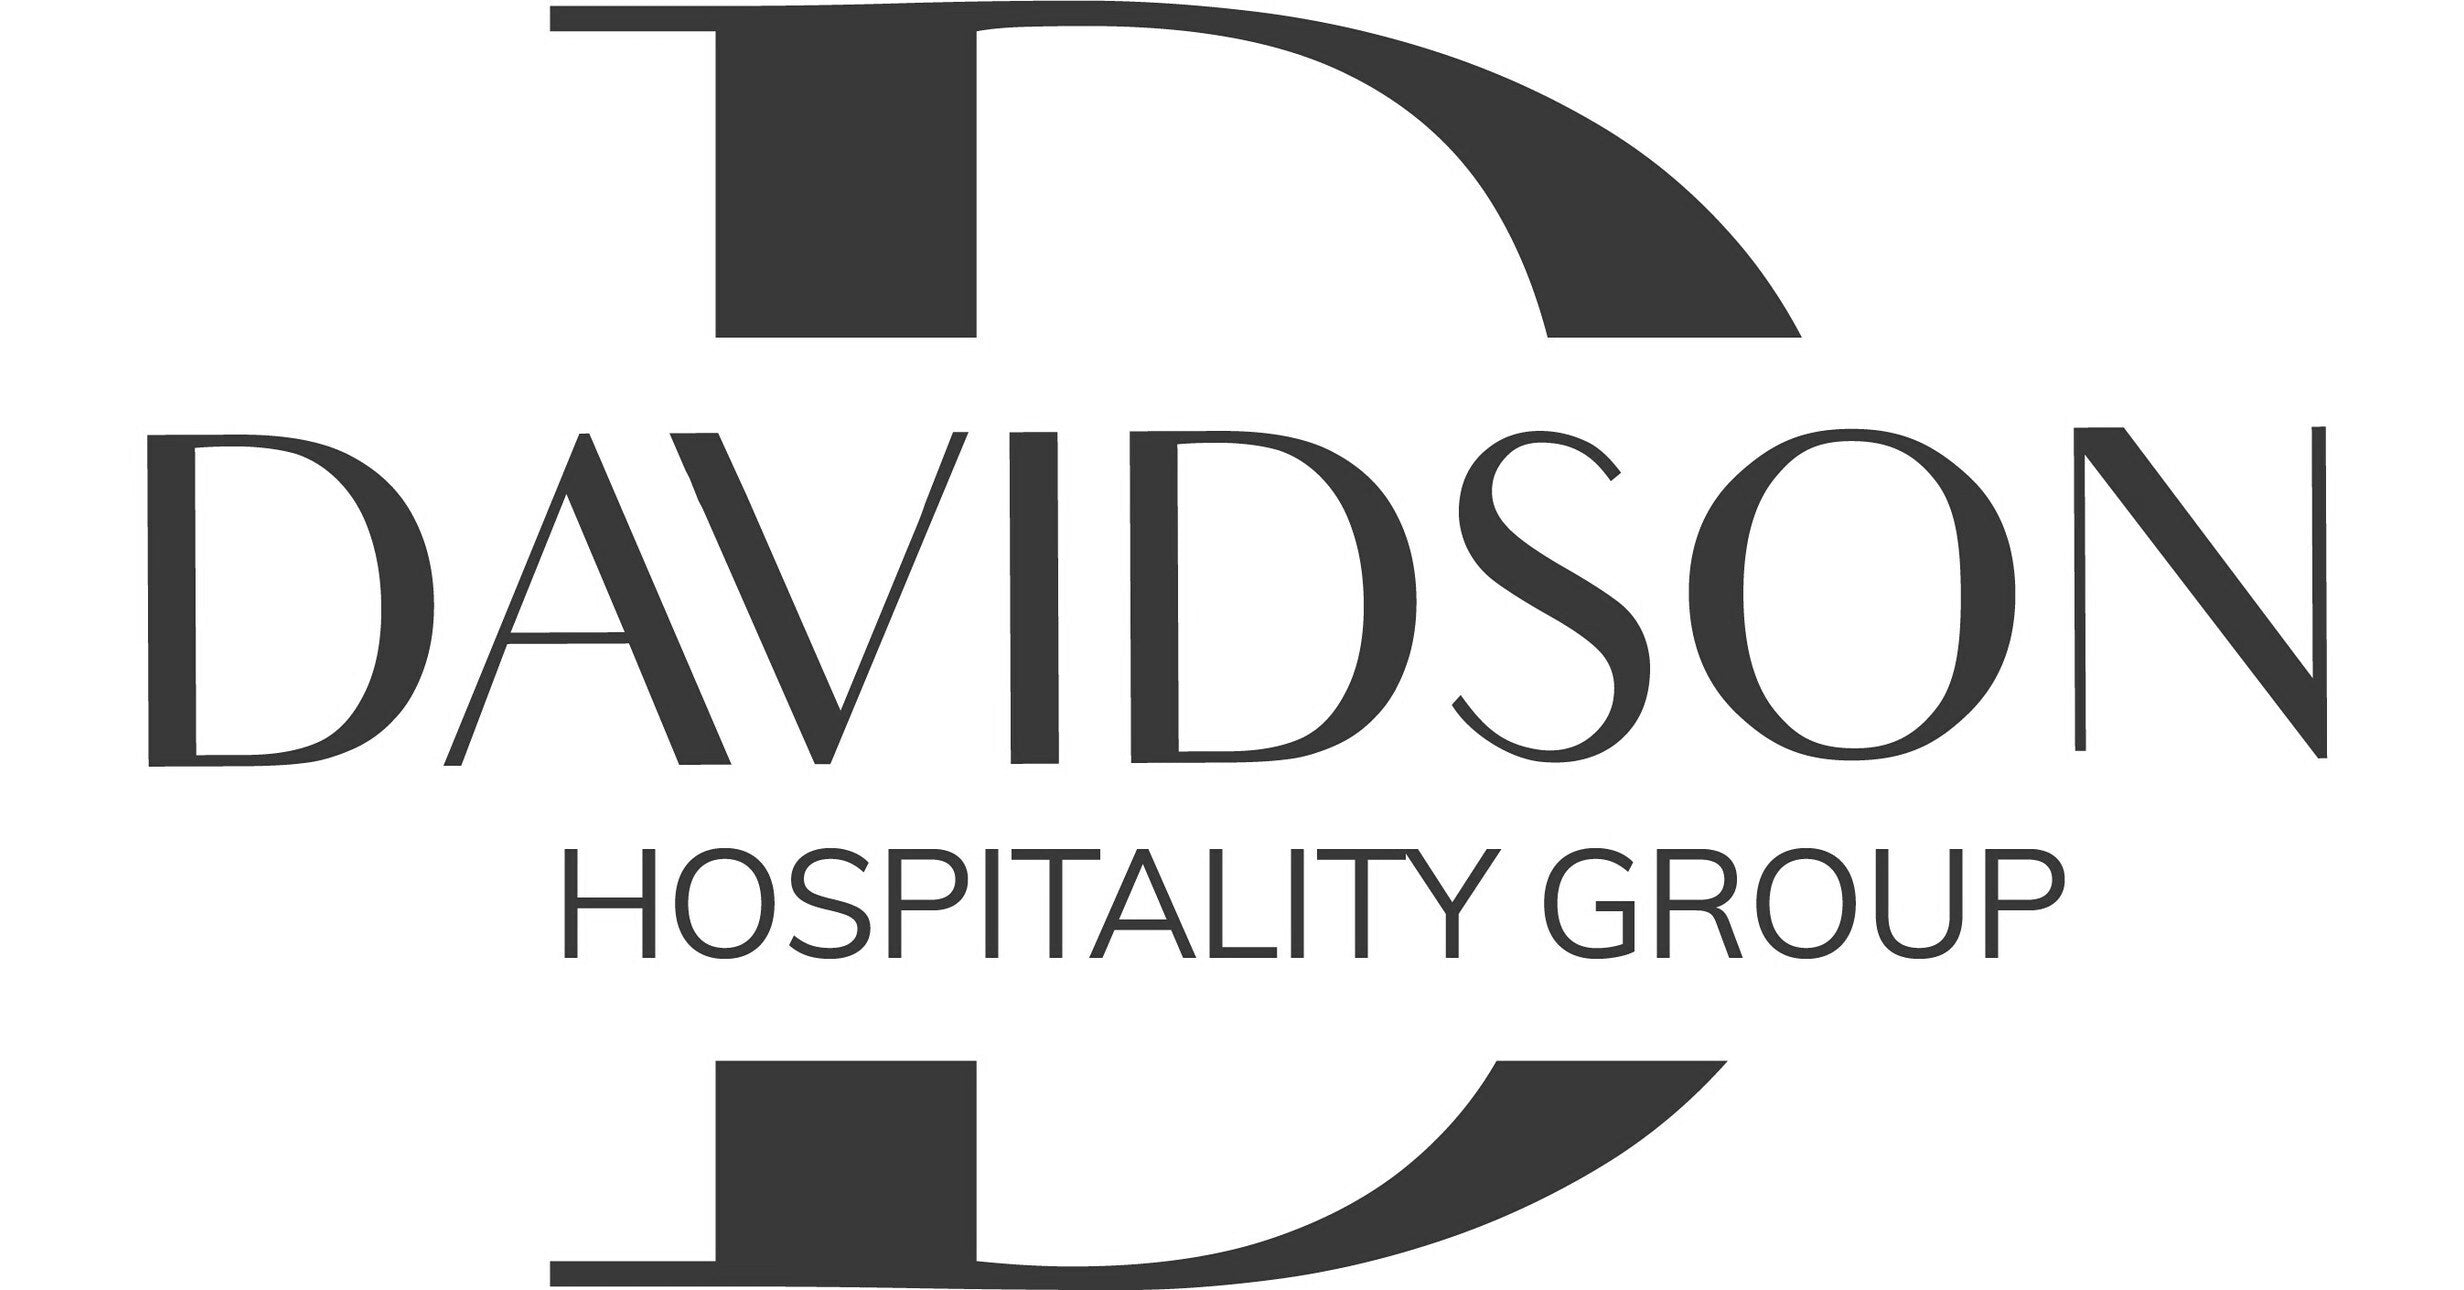 Davidson Hospitality Group